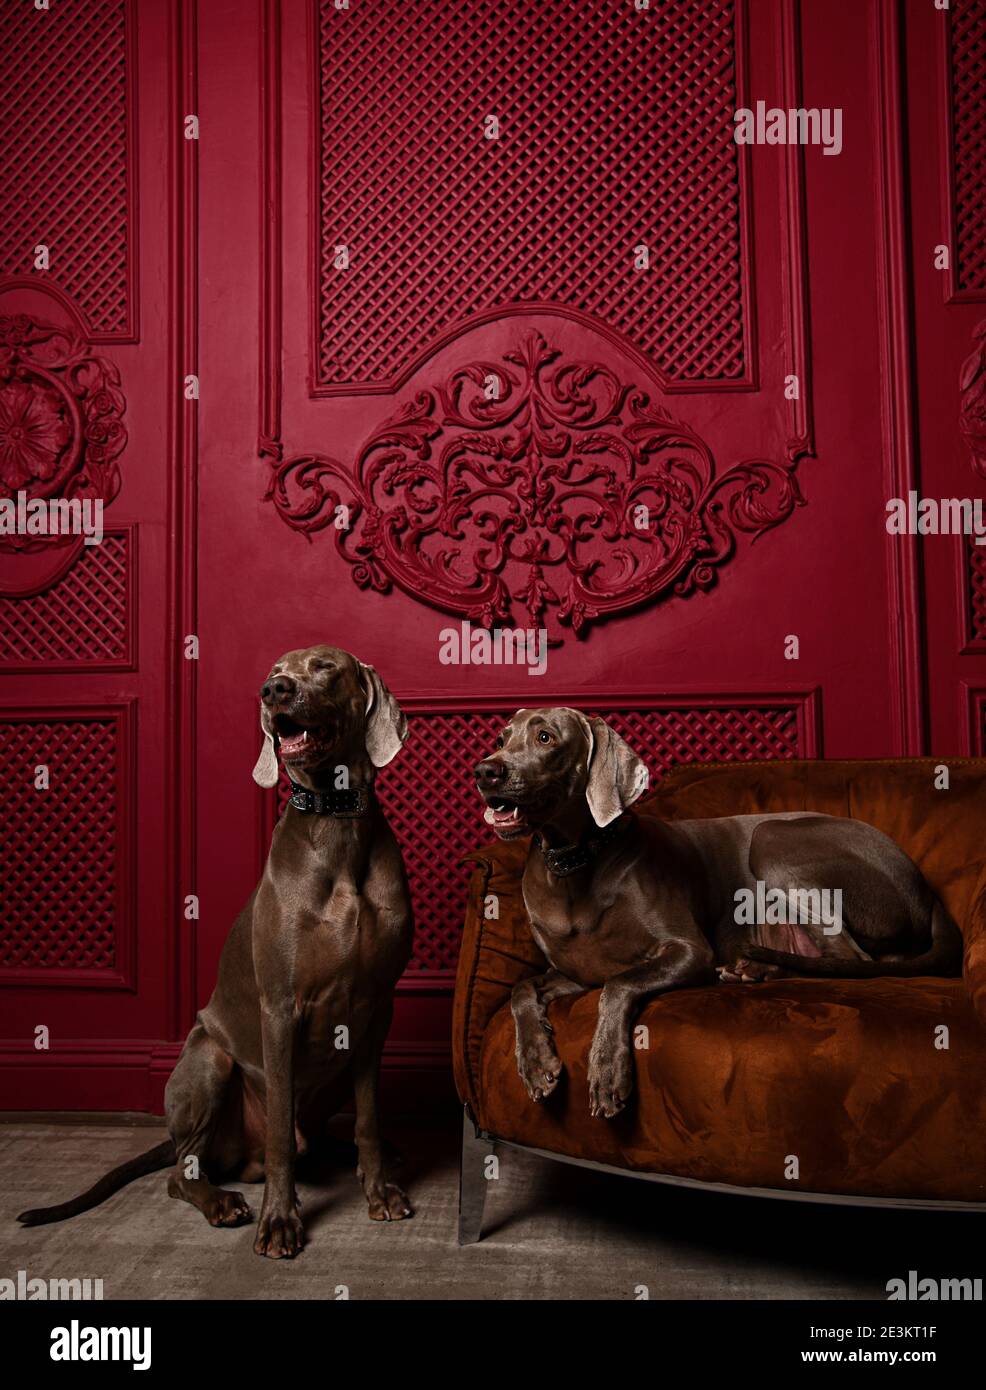 Zwei schöne grau braune Weimaraner Hunde sitzen in Luxus-Rot Innen ein Hund auf Ledersessel liegend Stockfoto